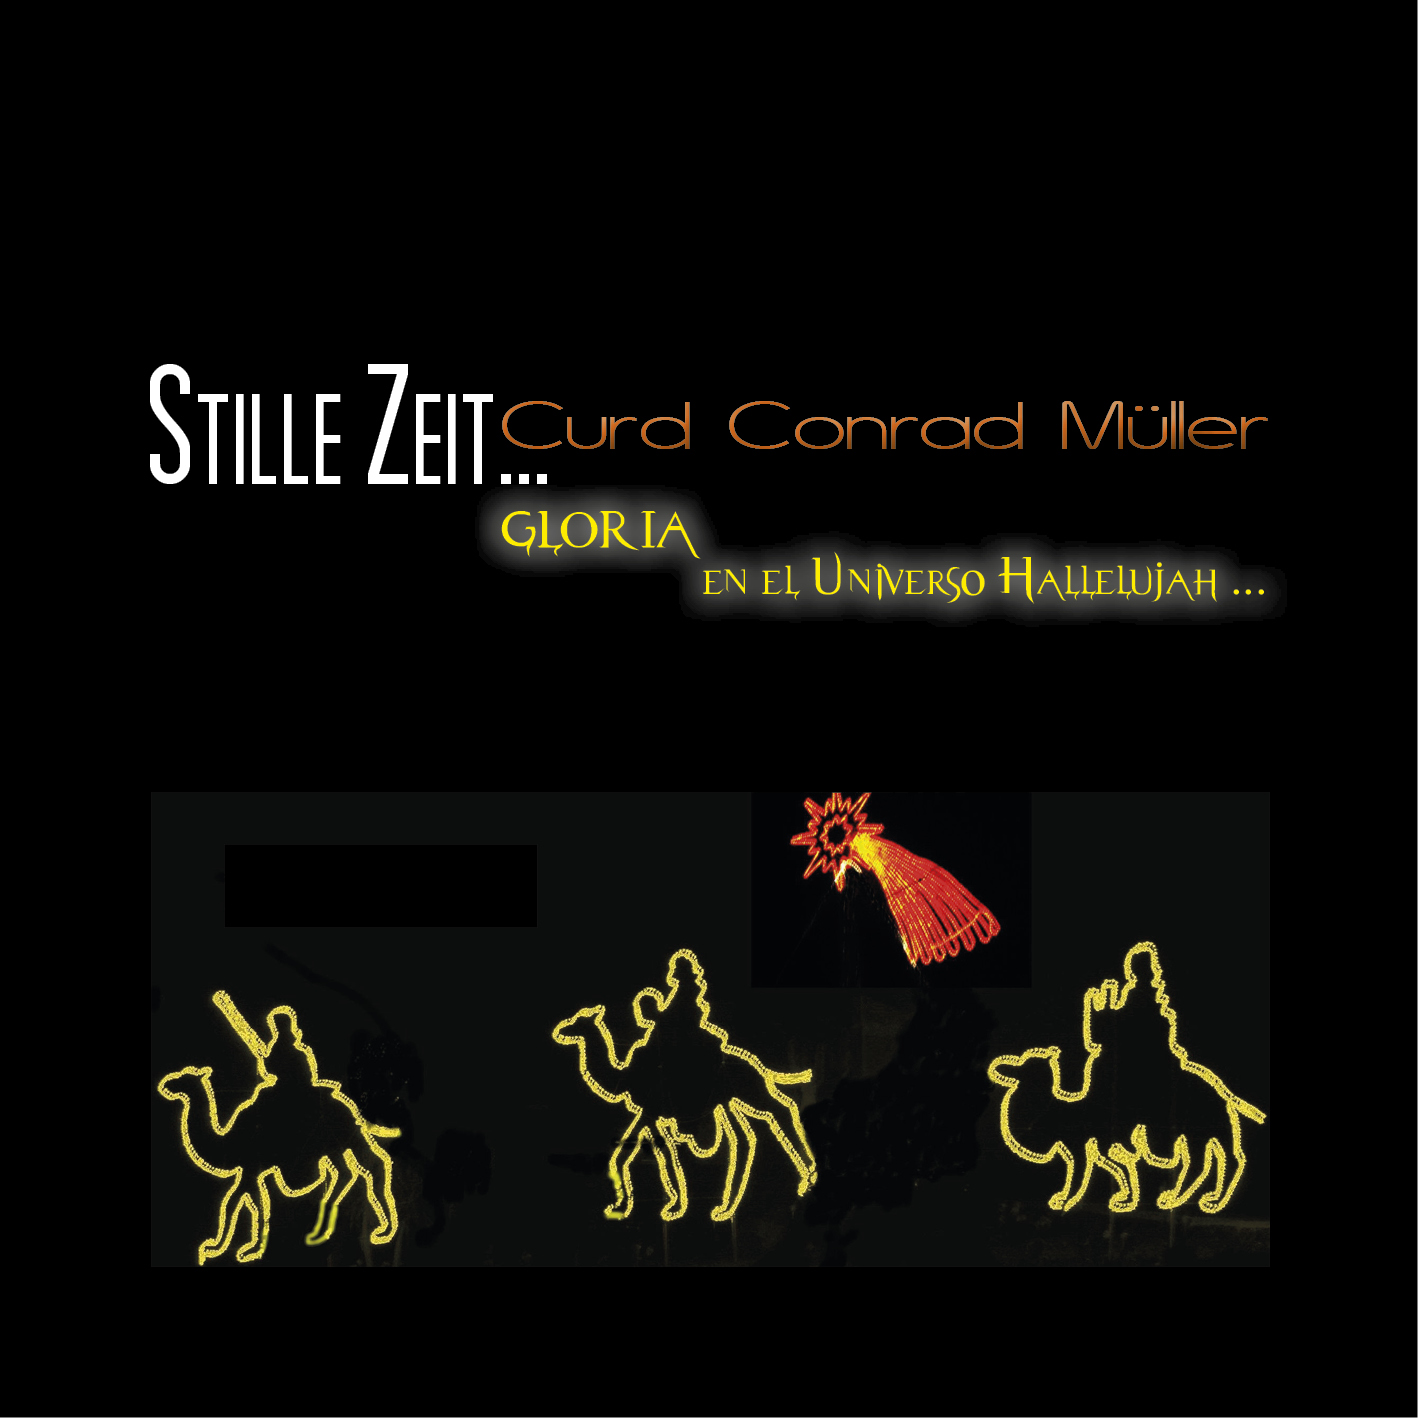 Curd Conrad Mller - Stille Zeit Cover.jpg